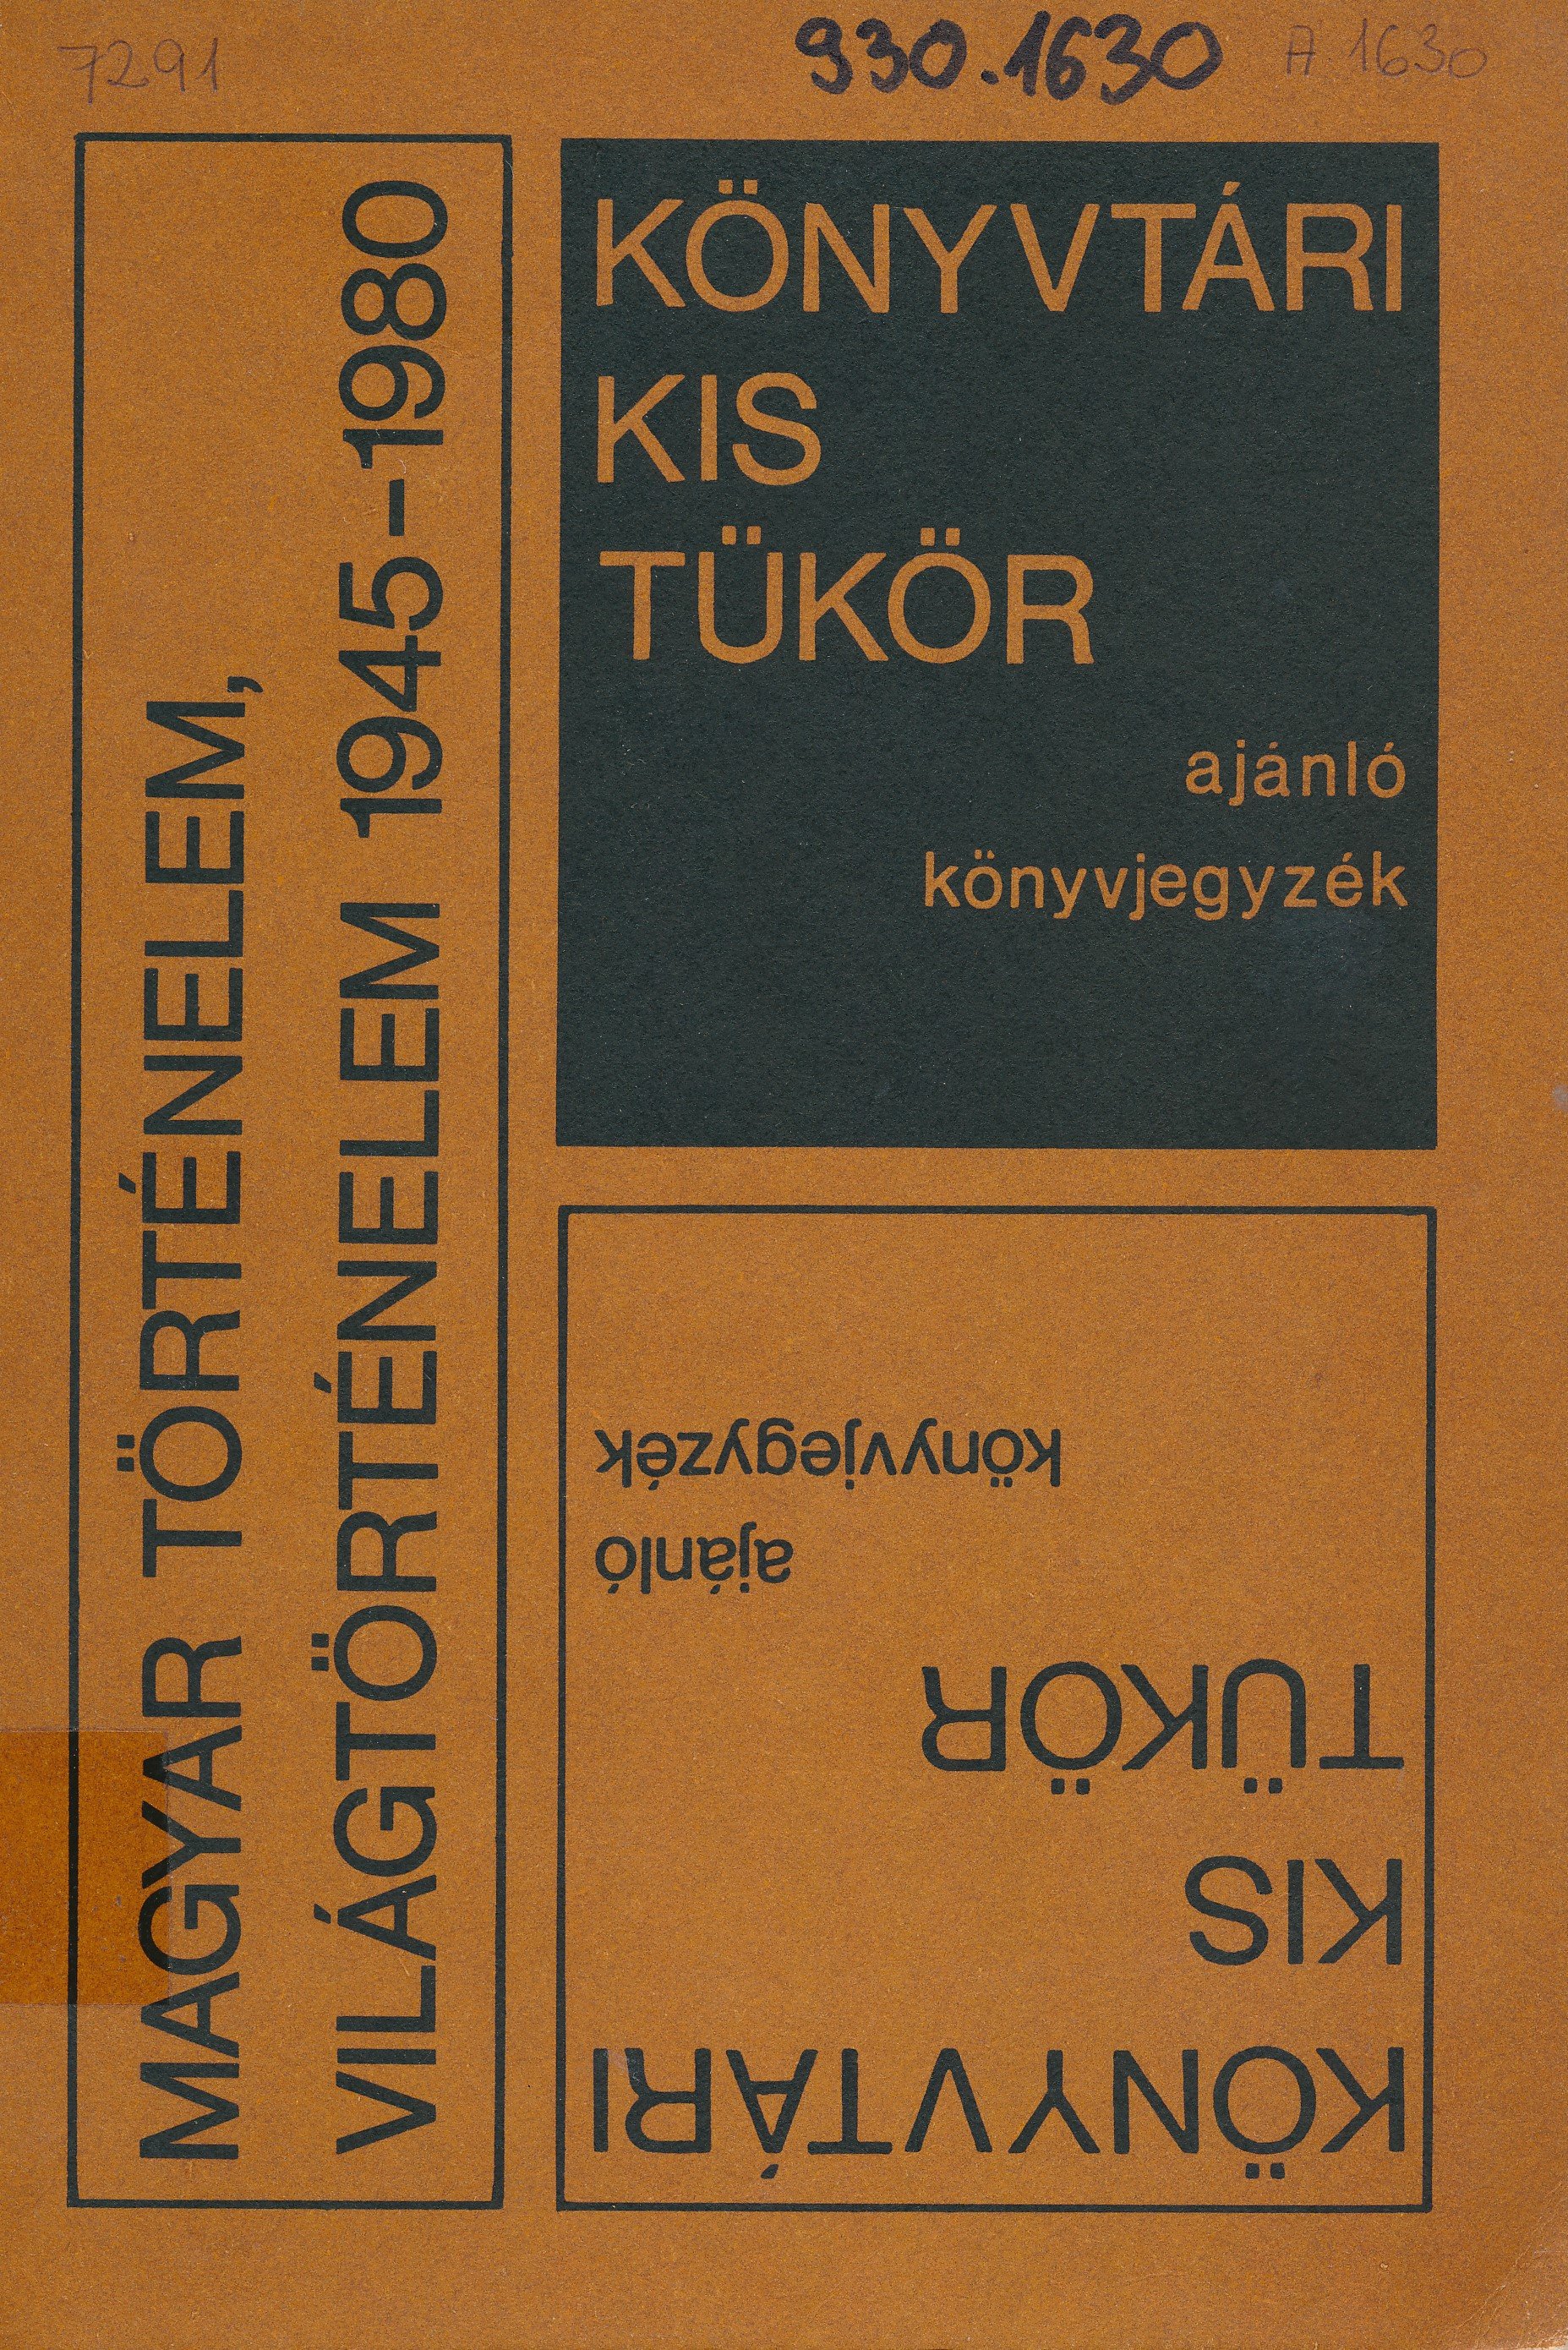 Könyvtári kis tükör ajánló könyvjegyzék (Erkel Ferenc Múzeum és Könyvtár, Gyula CC BY-NC-SA)